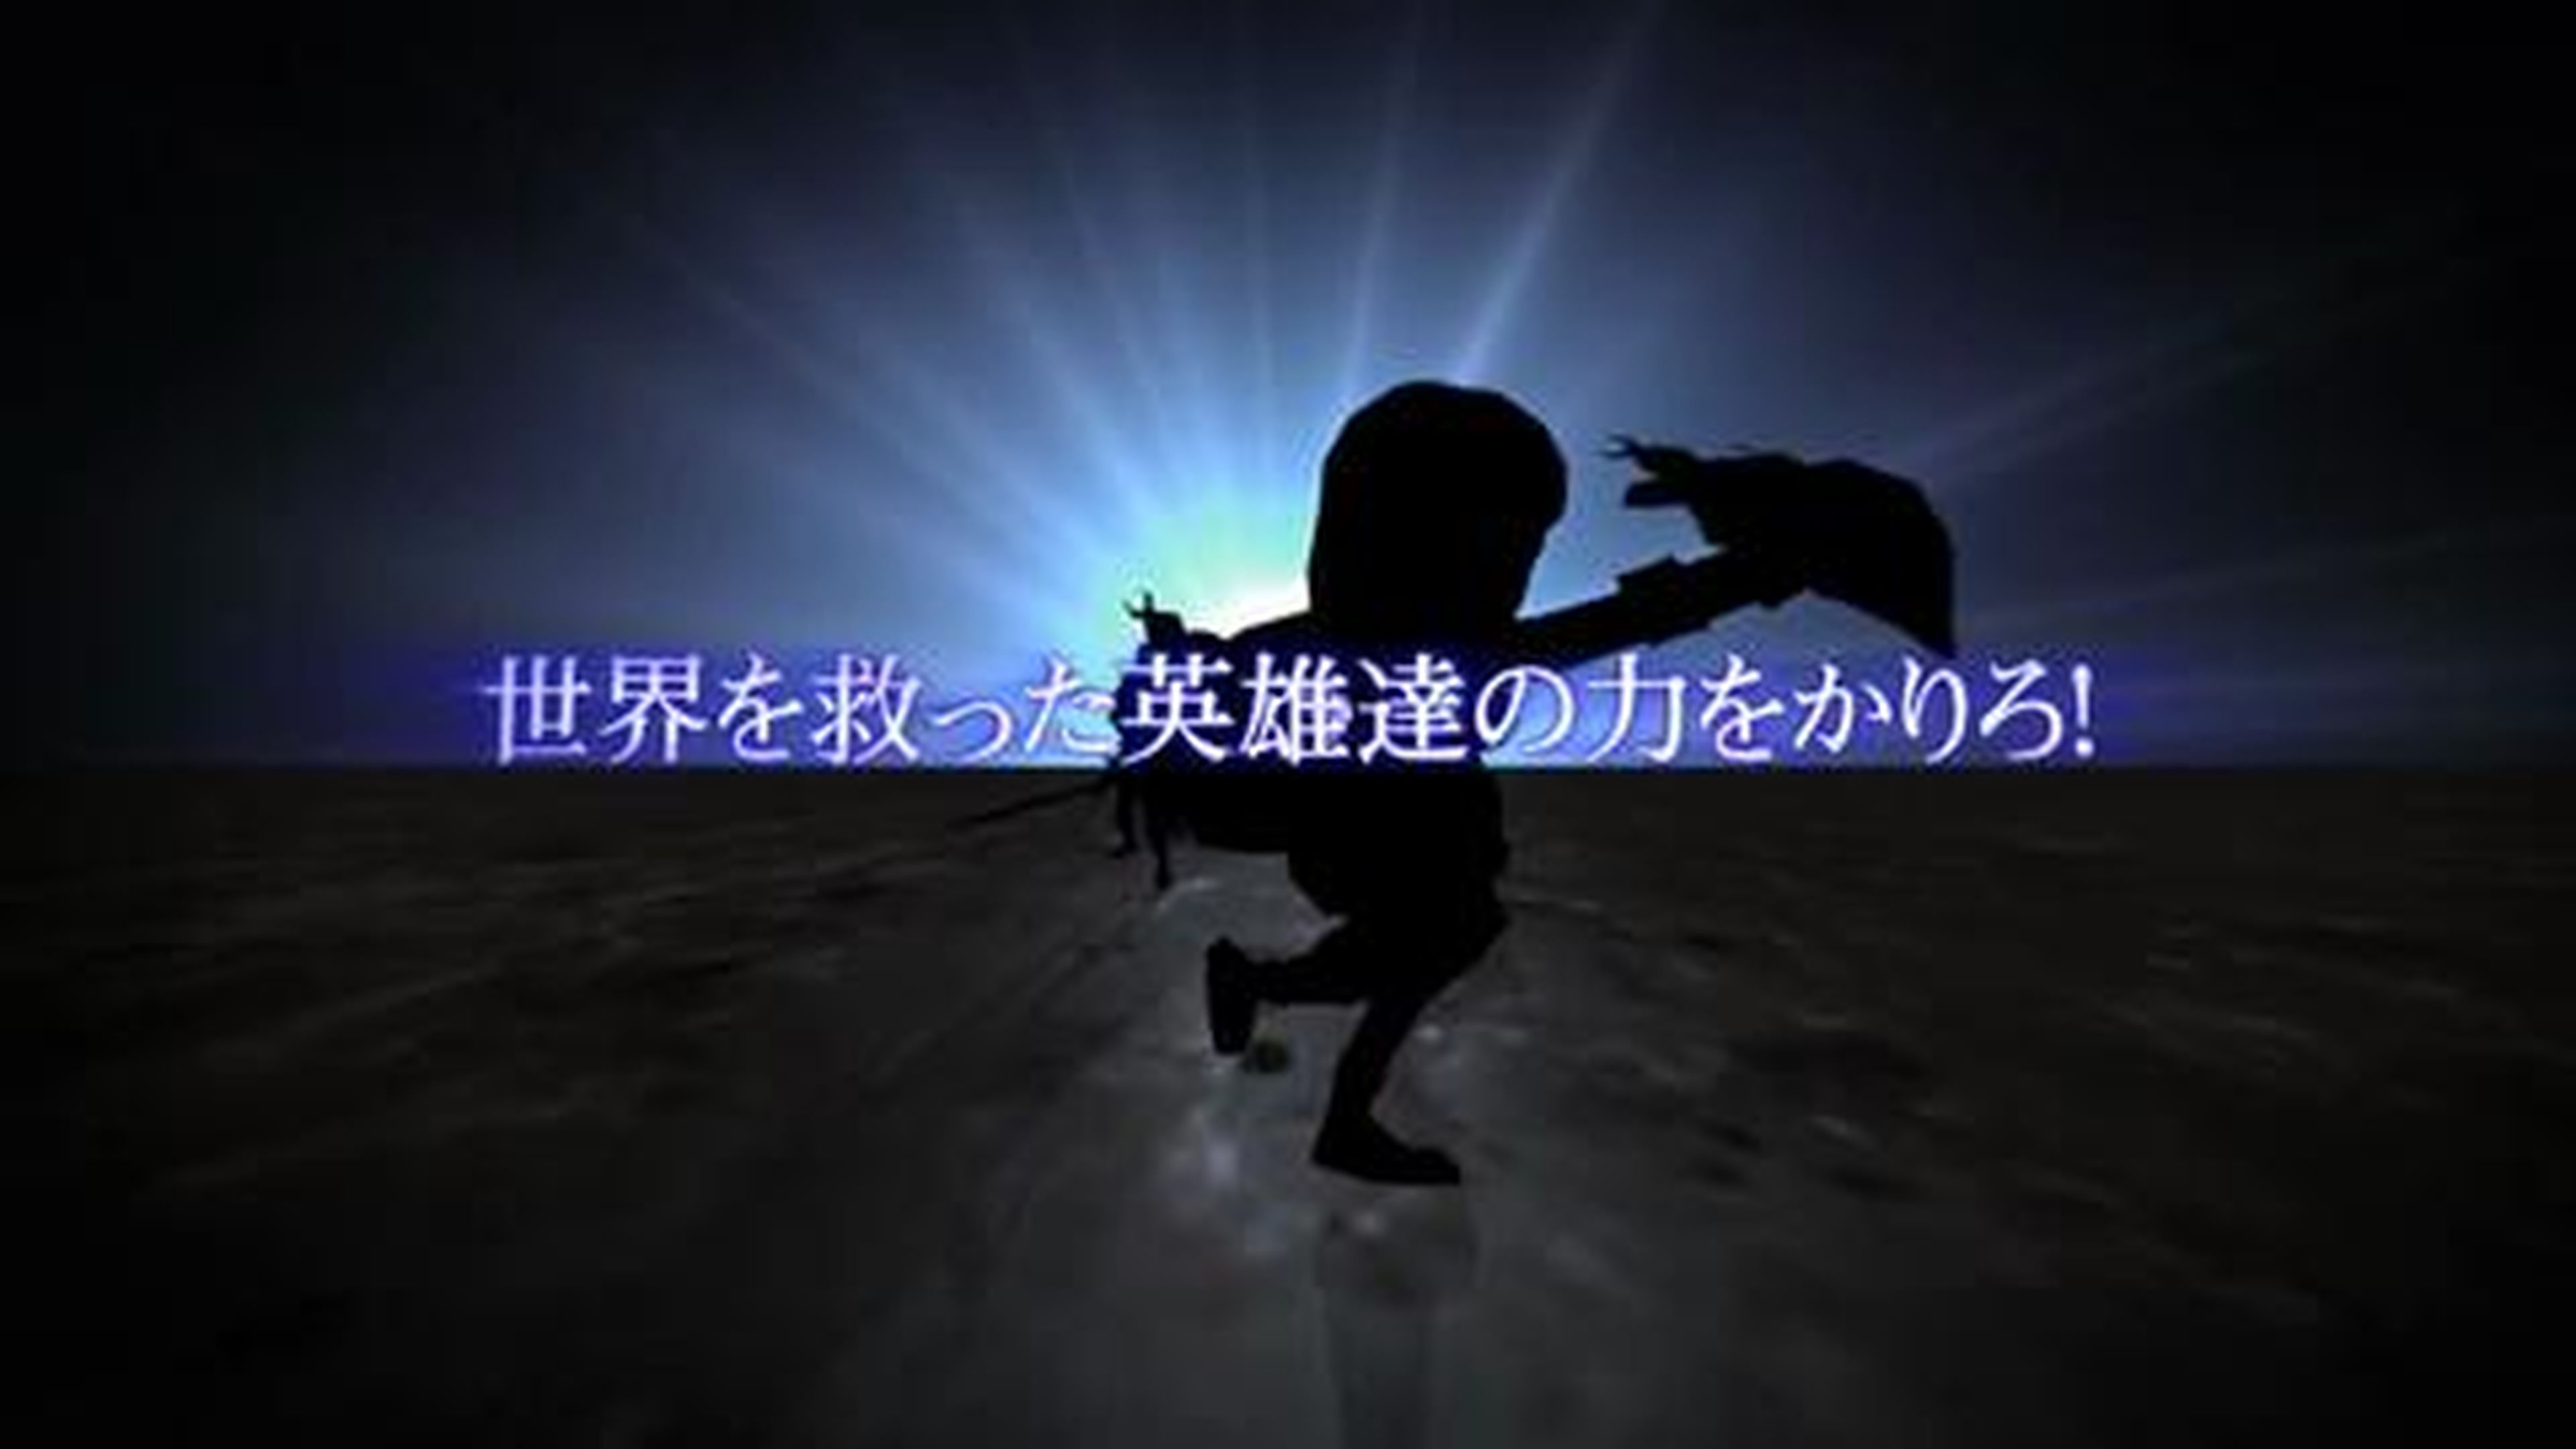 Final Fantasy Explorers TGS 2014 Trailer